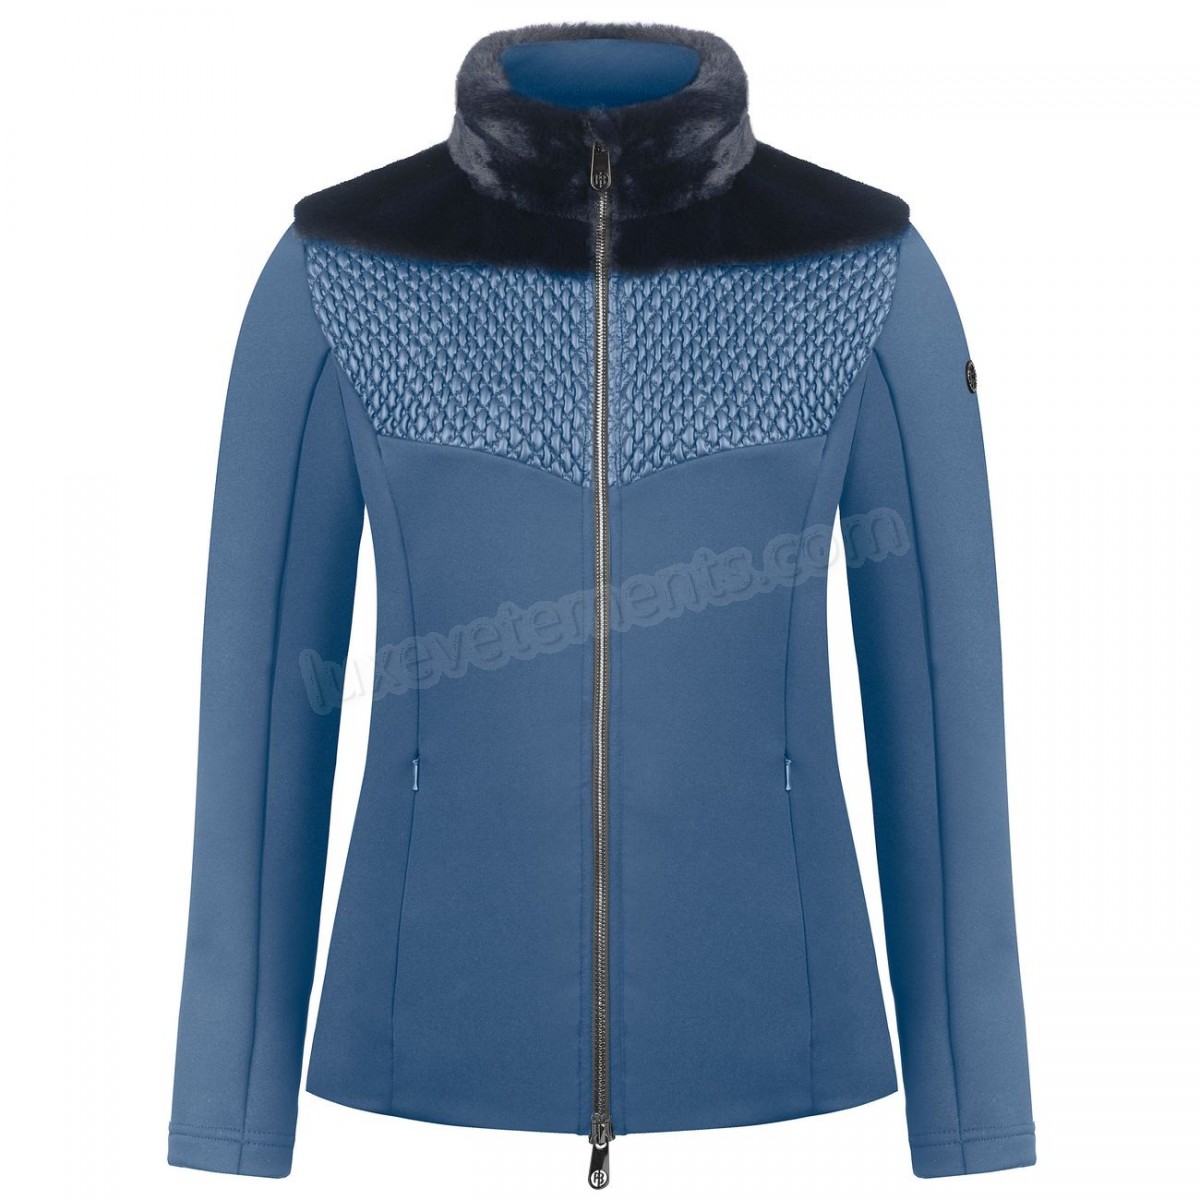 Poivre Blanc-Sports d'hiver femme POIVRE BLANC Veste En Polaire Poivre Blanc Hybrid Stretch Fleece Jacket 1600 Multico Blue Femme Vente en ligne - -0